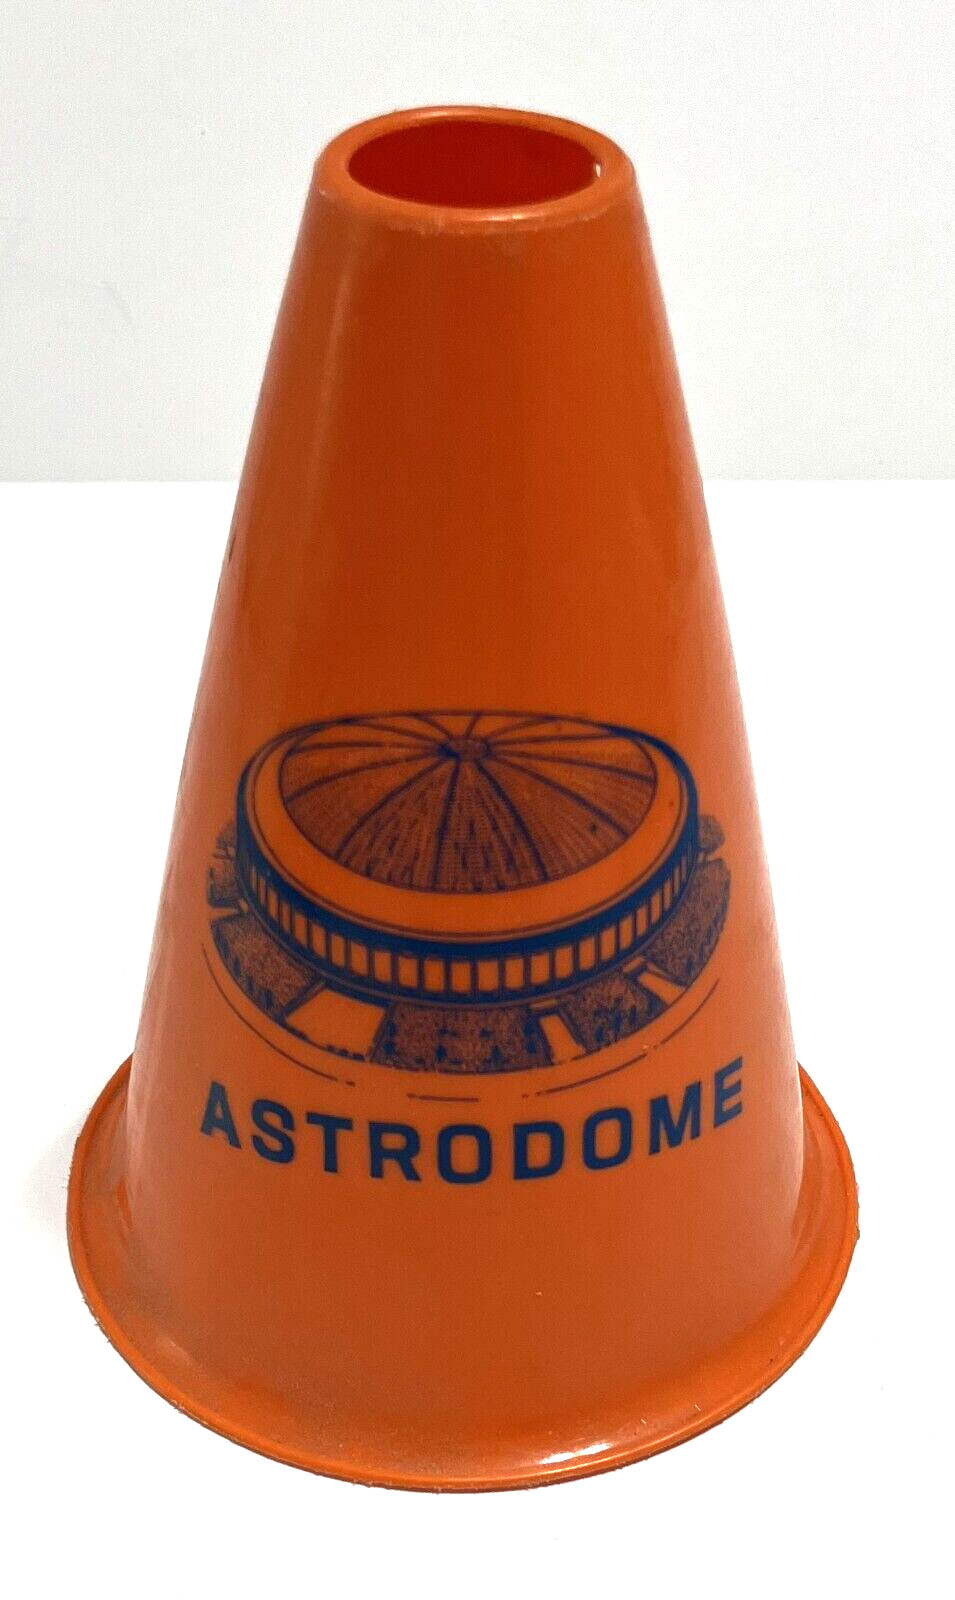 ASTRODOME Houston Texas Vintage Decor Orange Mini Parking Lot Cone 7 in x 5 in